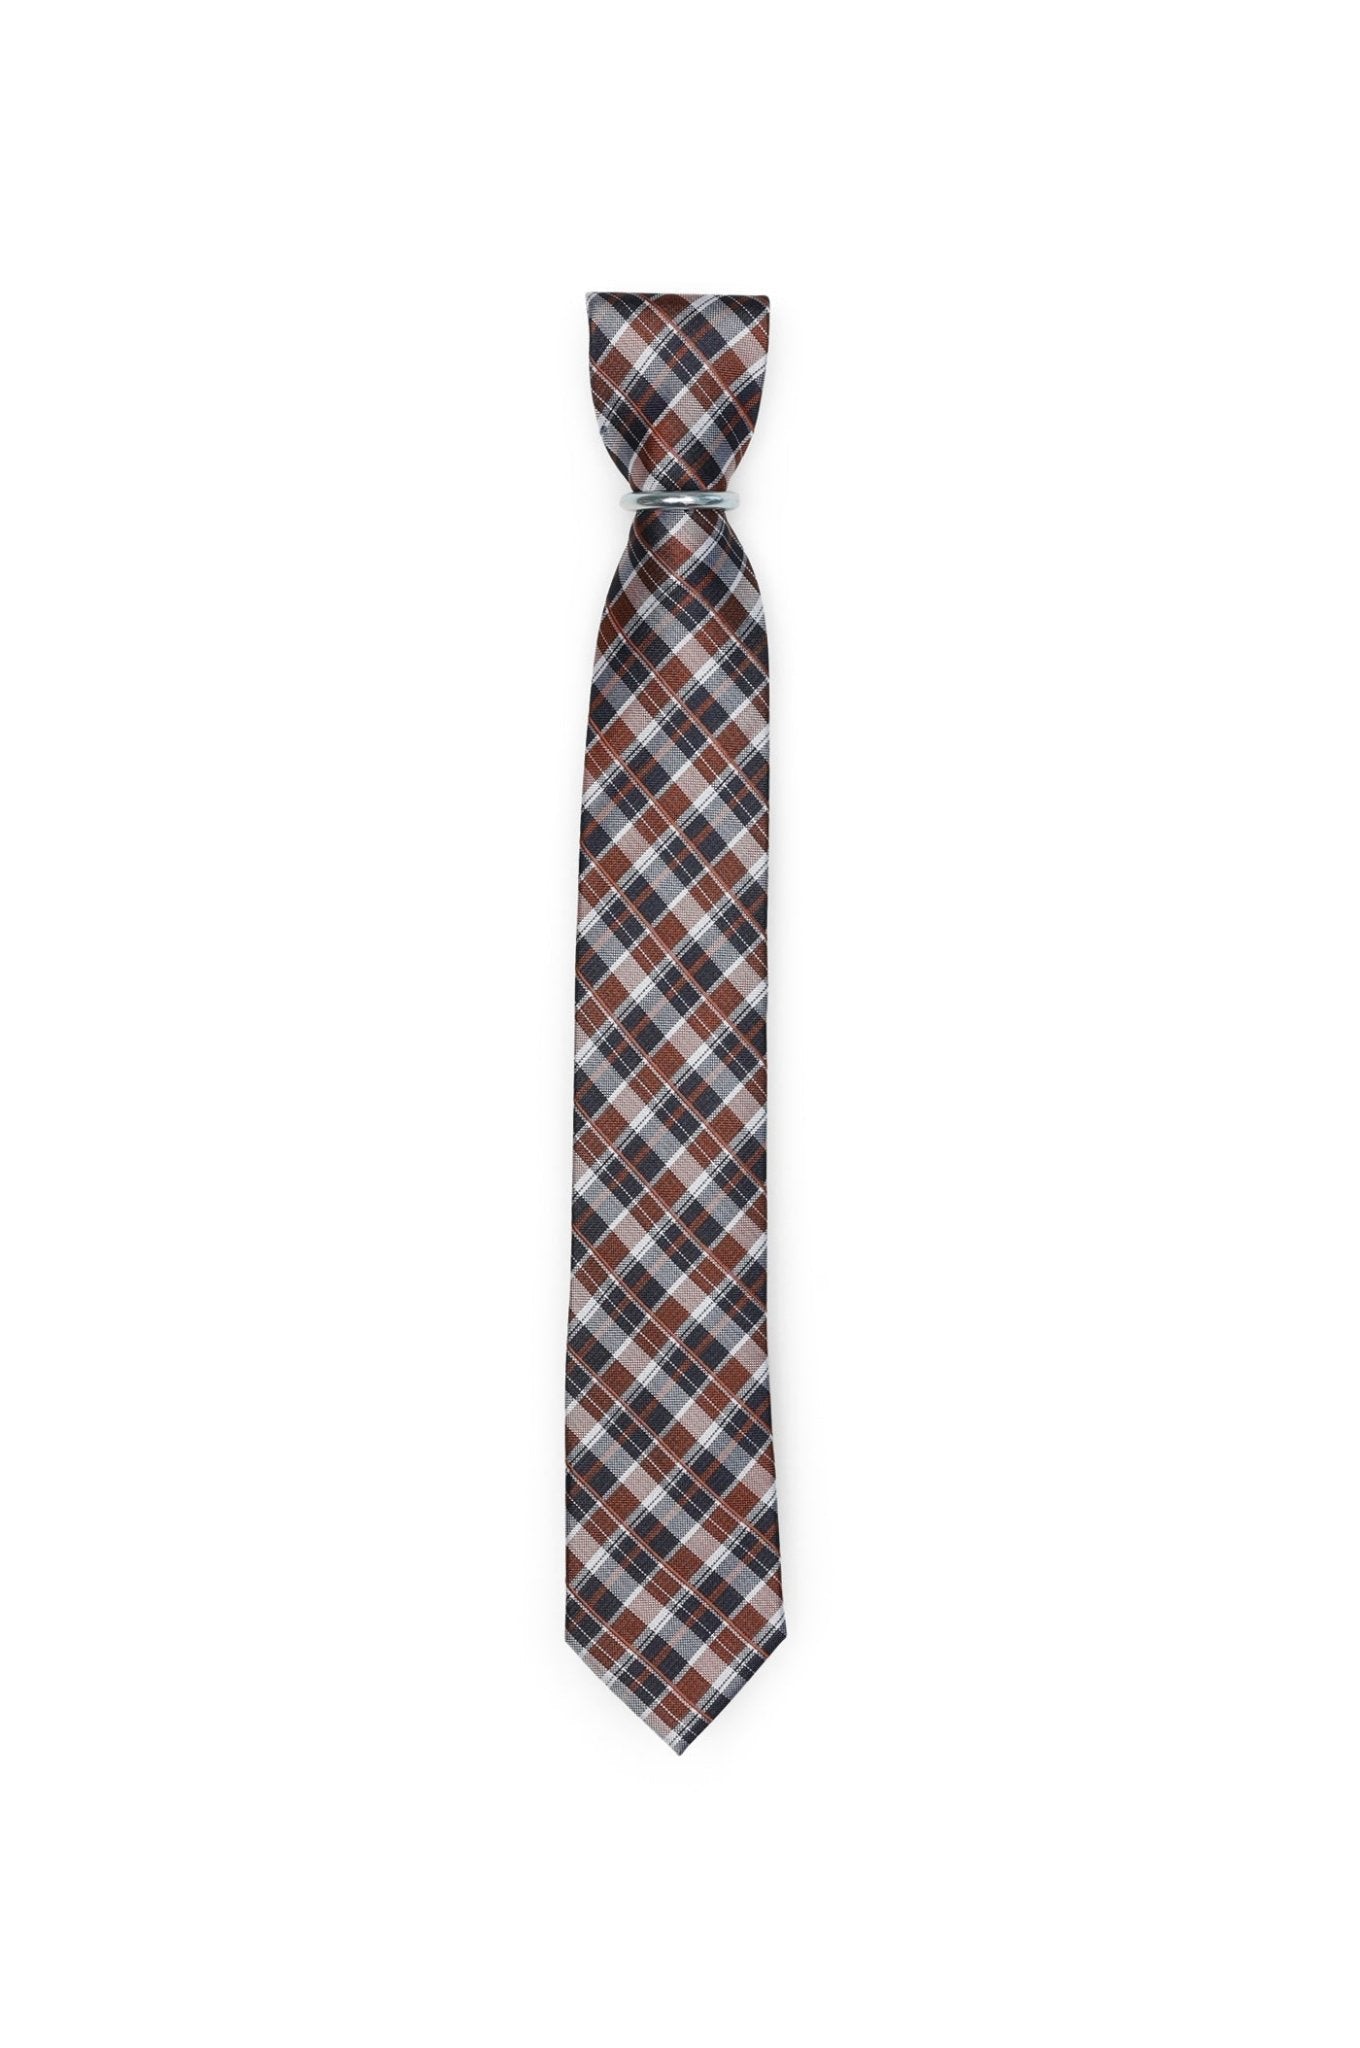 Krawatte Karo Design - Schwarz - REAL GUYS